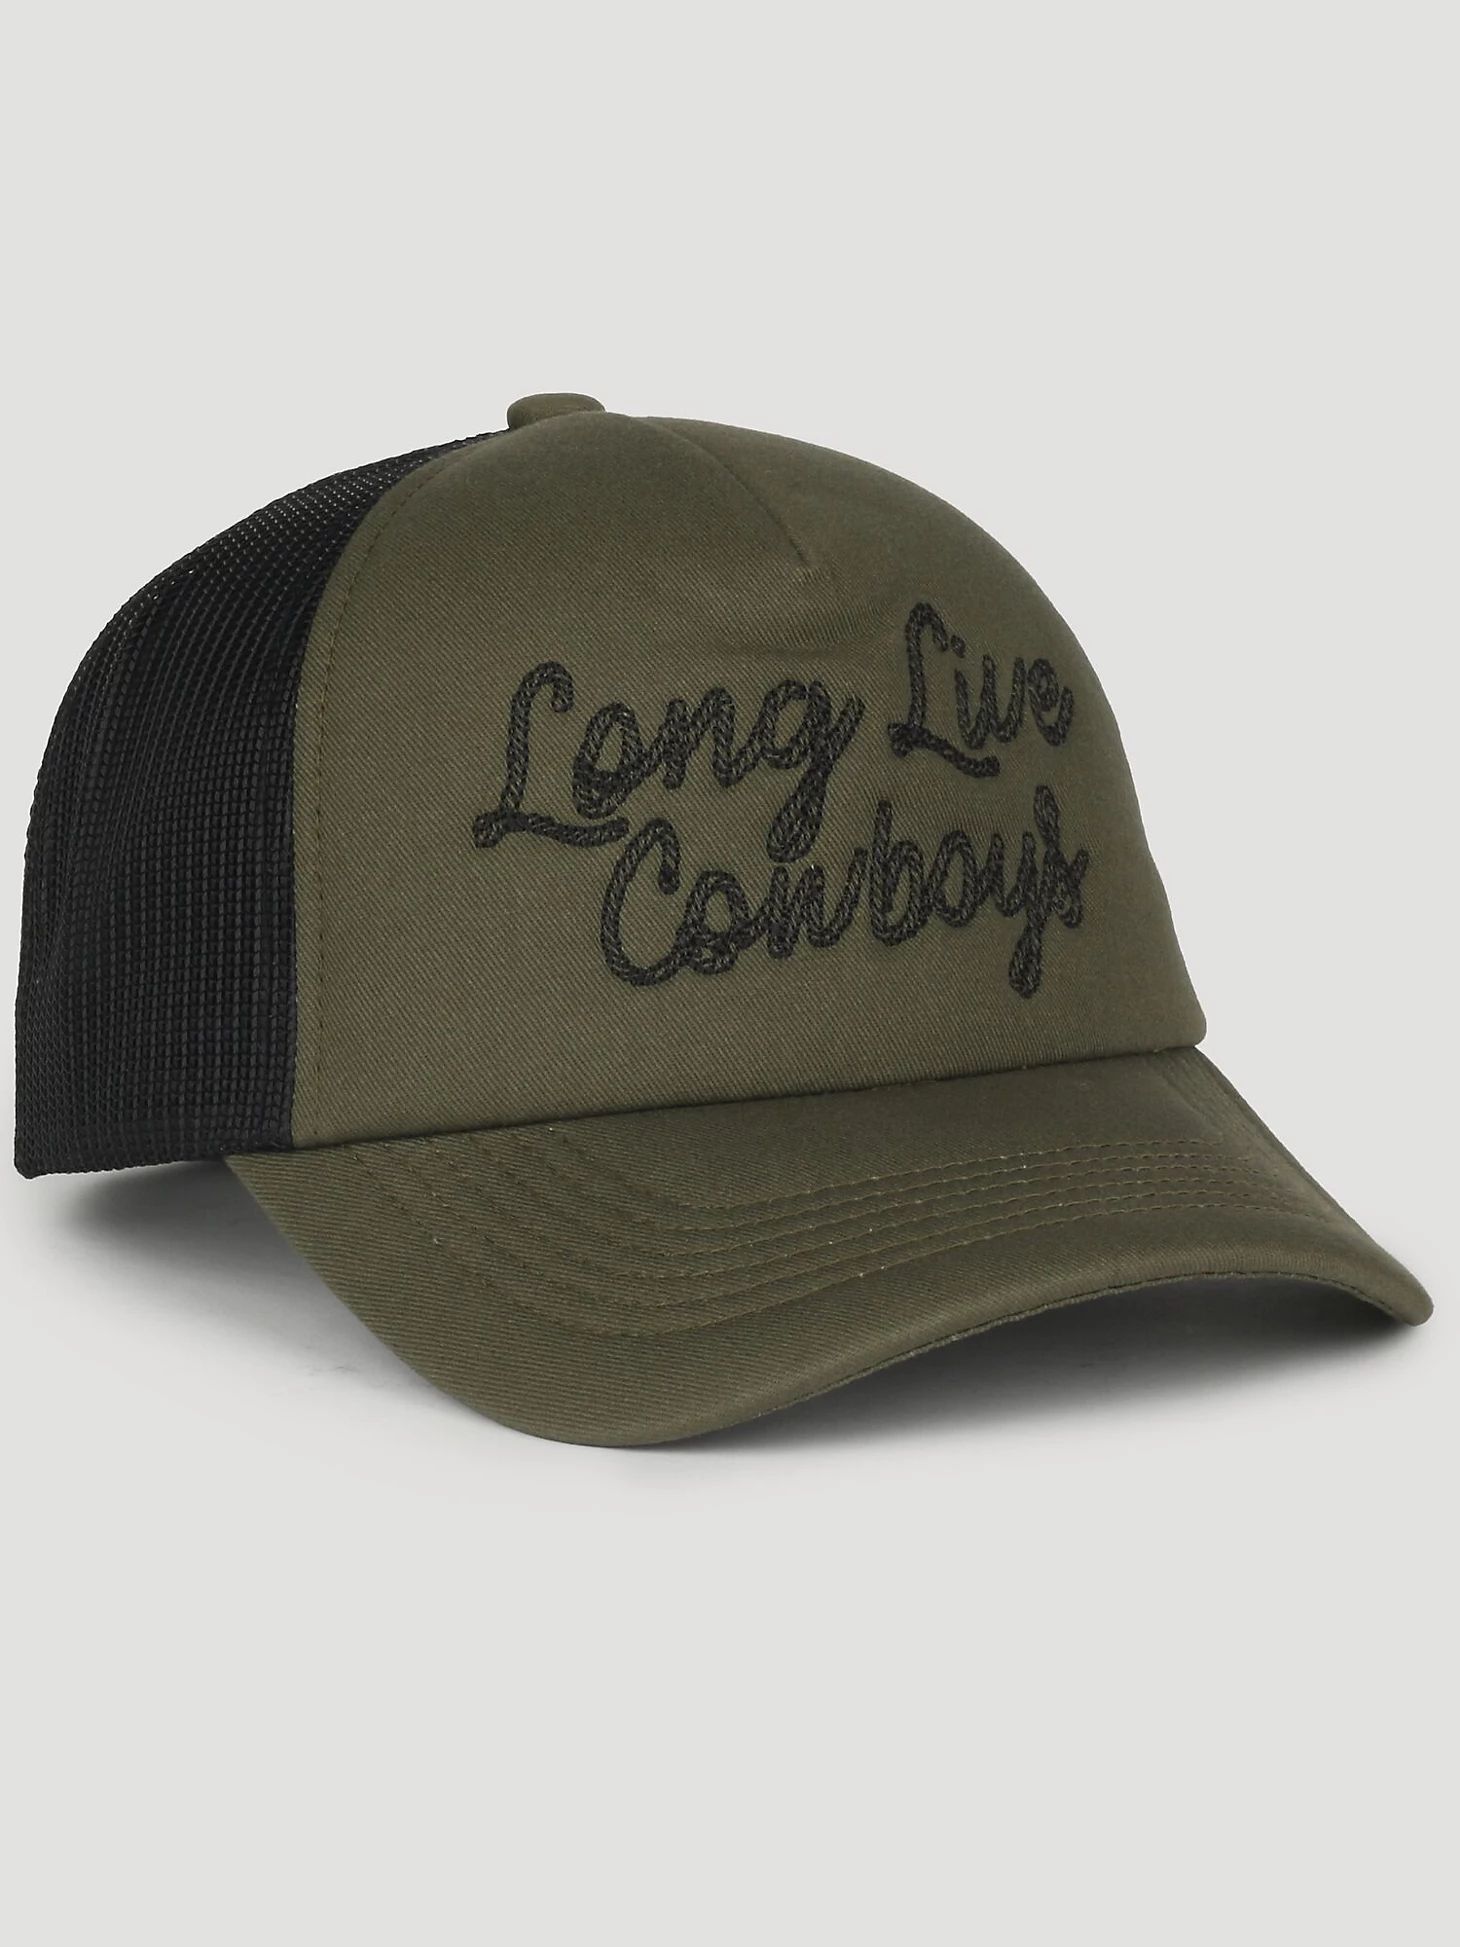 Long Live Cowboys Baseball Cap in Green | Wrangler